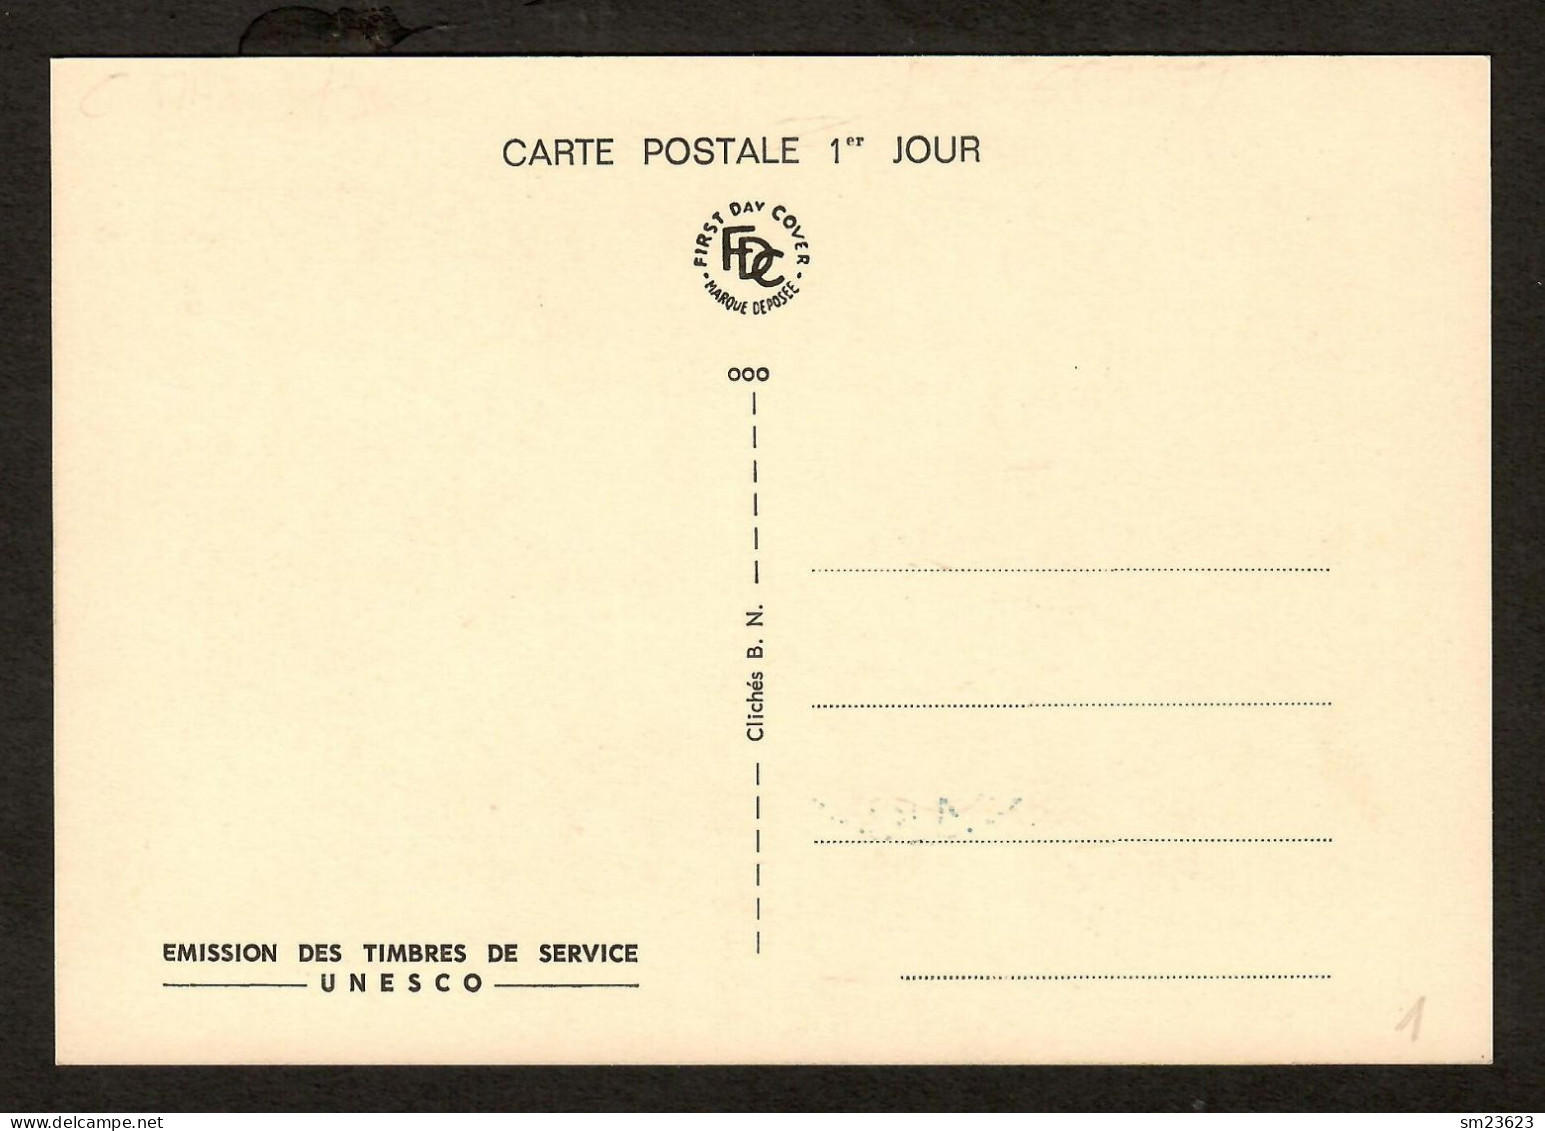 Frankreich 1965   Mi.Nr. 4 , Dienstmarken Für Die UNESCO - Maximum Card - Premier Jour 23. JANV.1965  PARIS - Briefe U. Dokumente